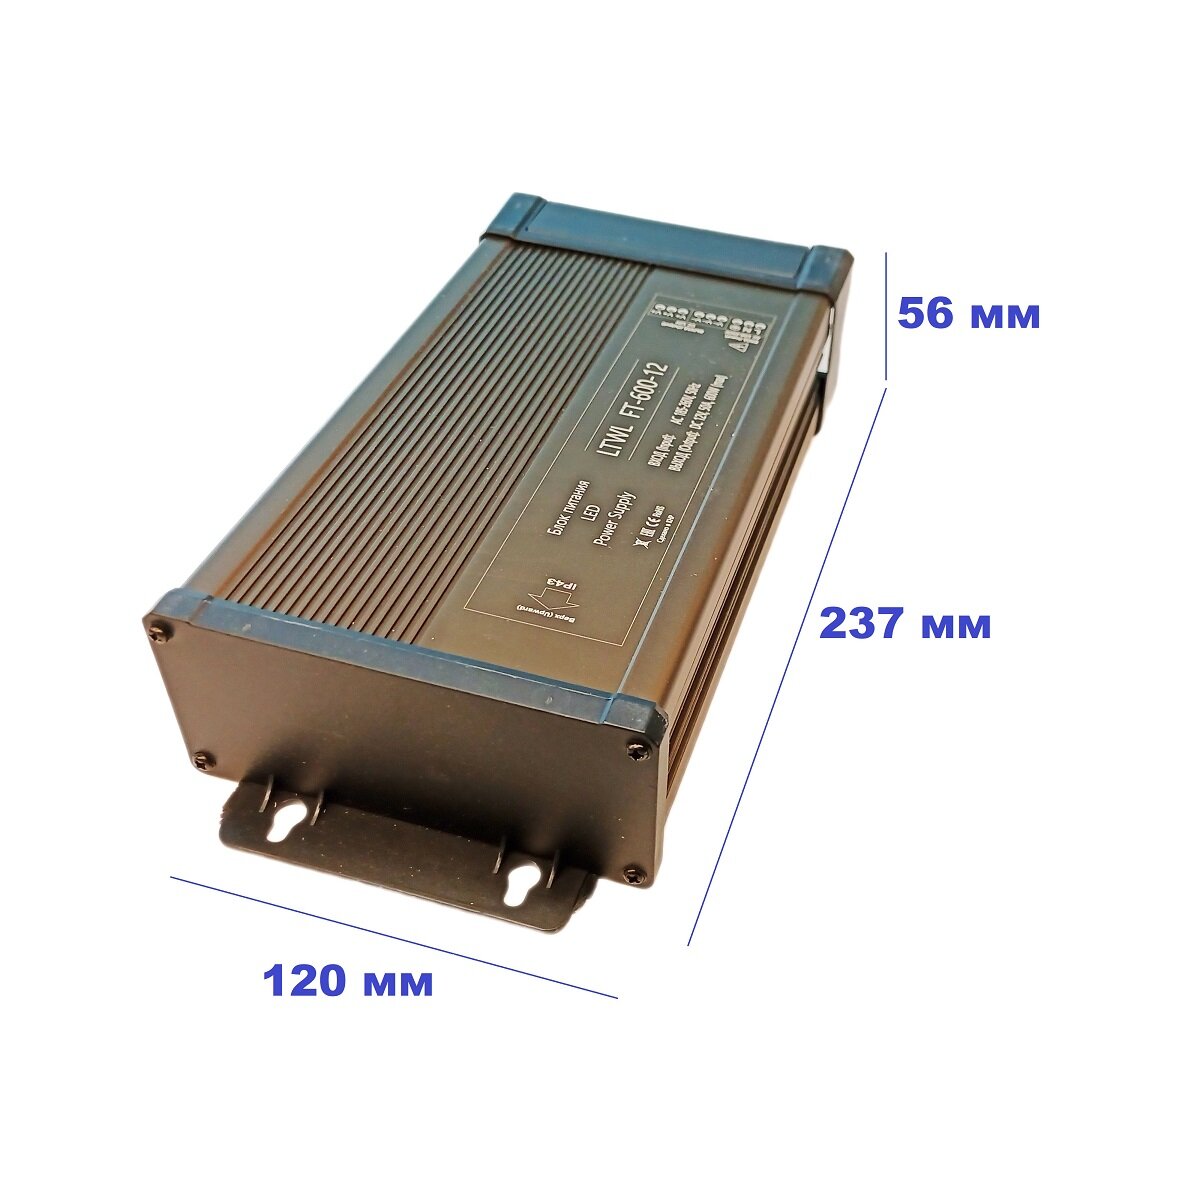 Мощный блок питания для светодиодной ленты 12В - 600 Вт - Litewell FT-600-12. Подходит для слаботочных систем видеонаблюдения и охраны 12V.